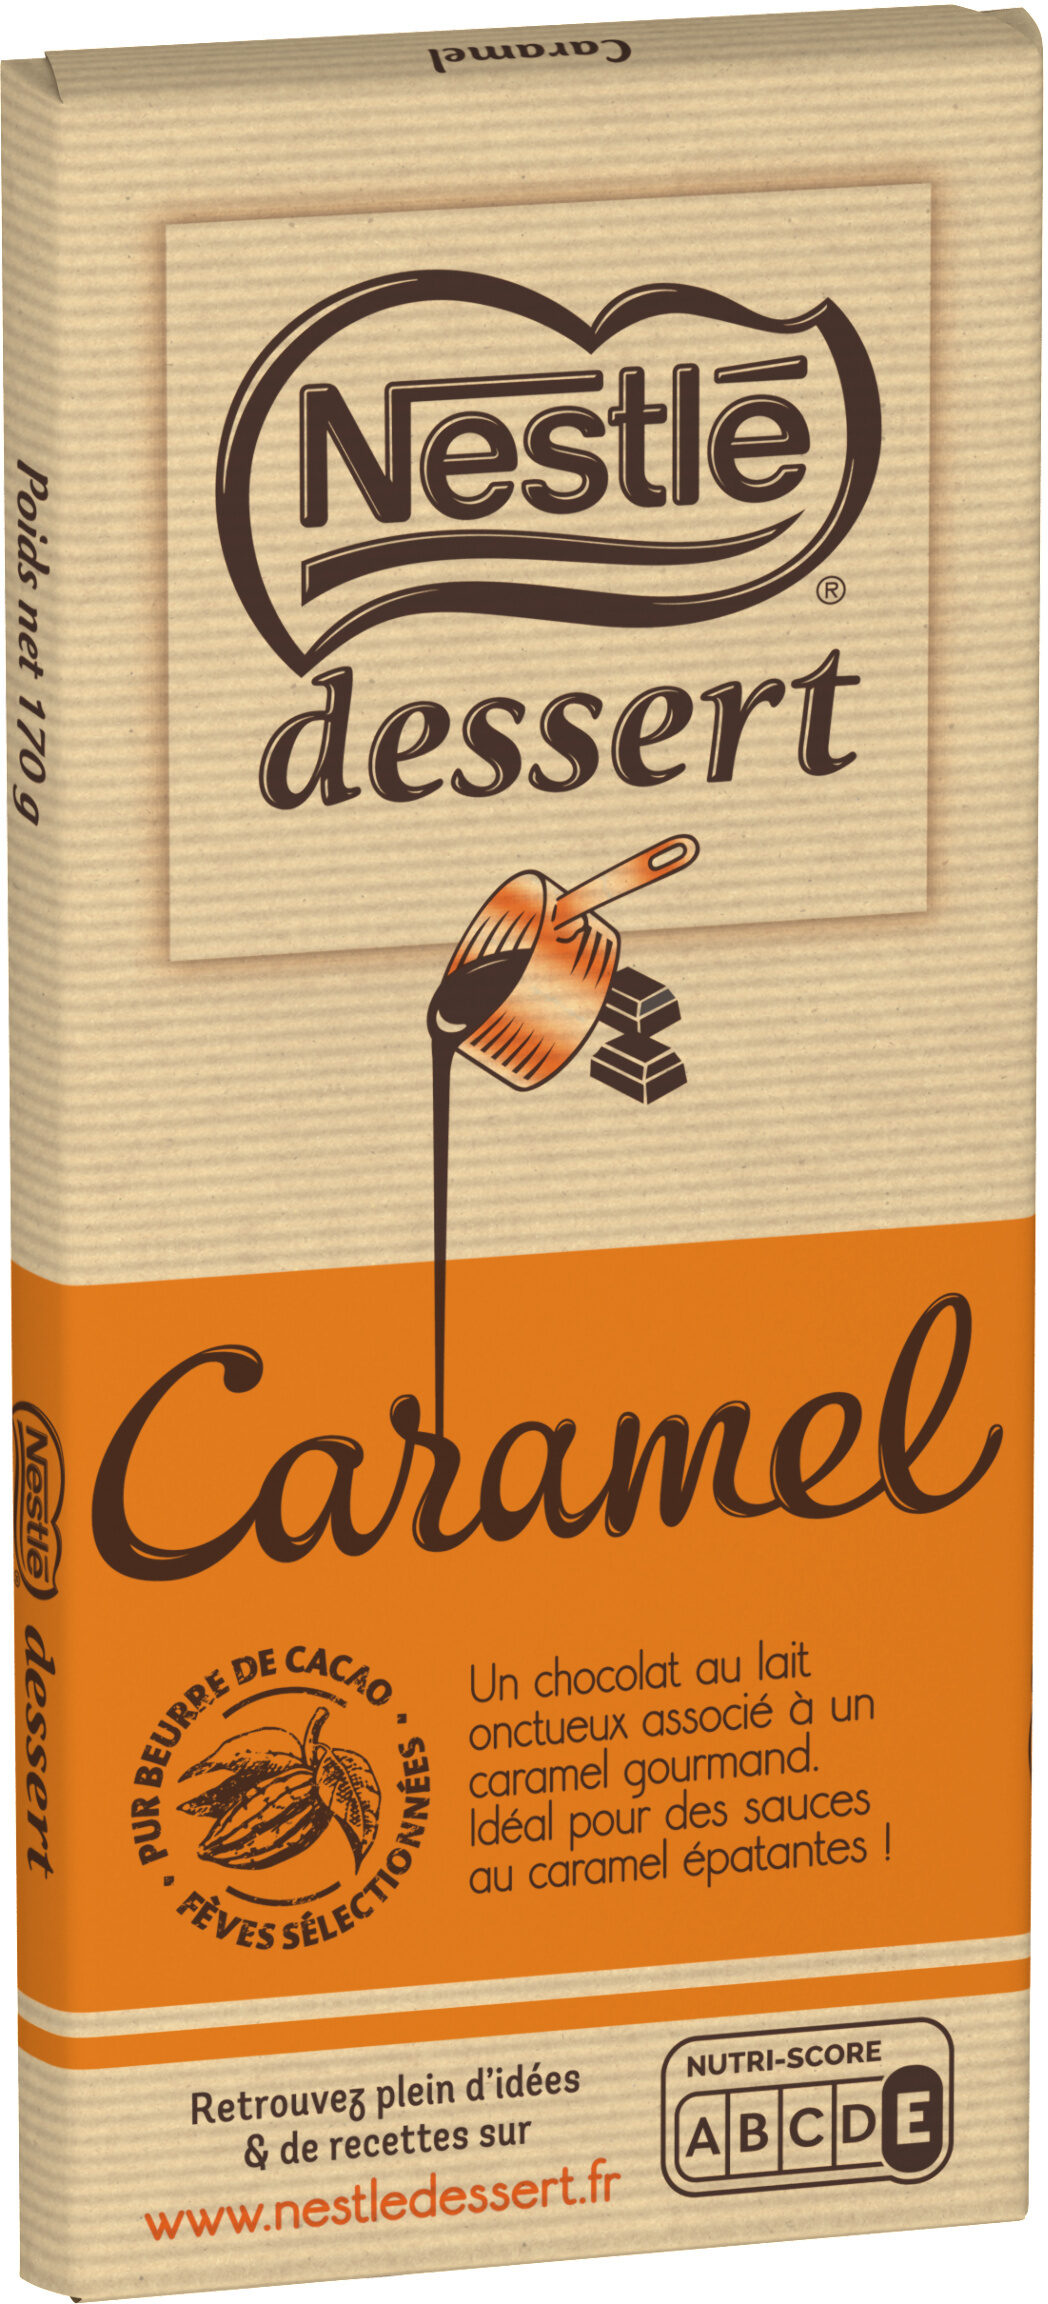 NESTLE DESSERT Caramel - Produit - fr